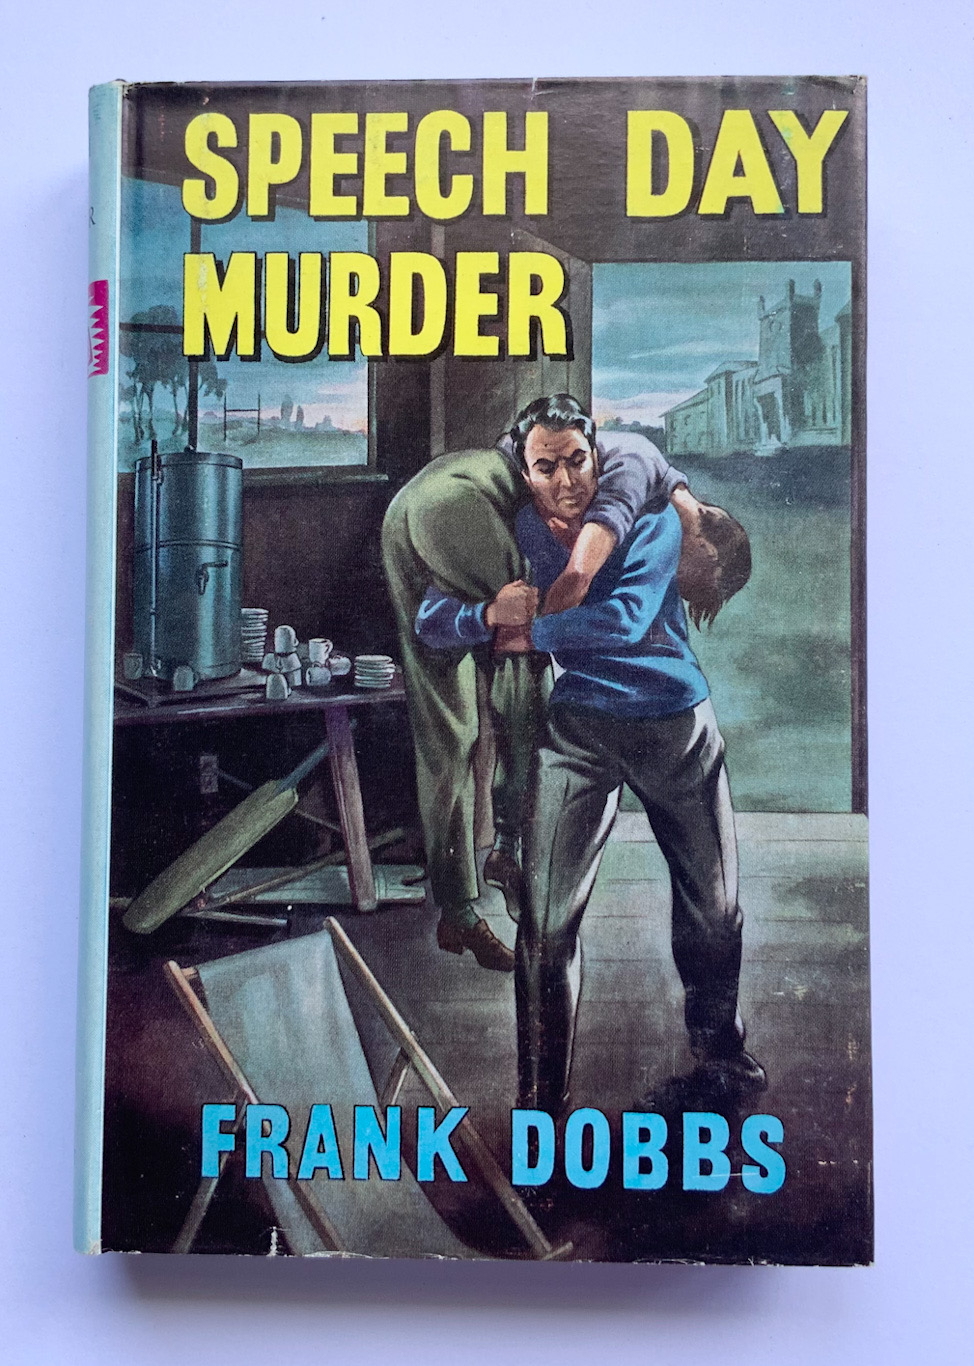 SPEECH DAY MURDER British crime book by Frank Dobbs 1961 1st edition